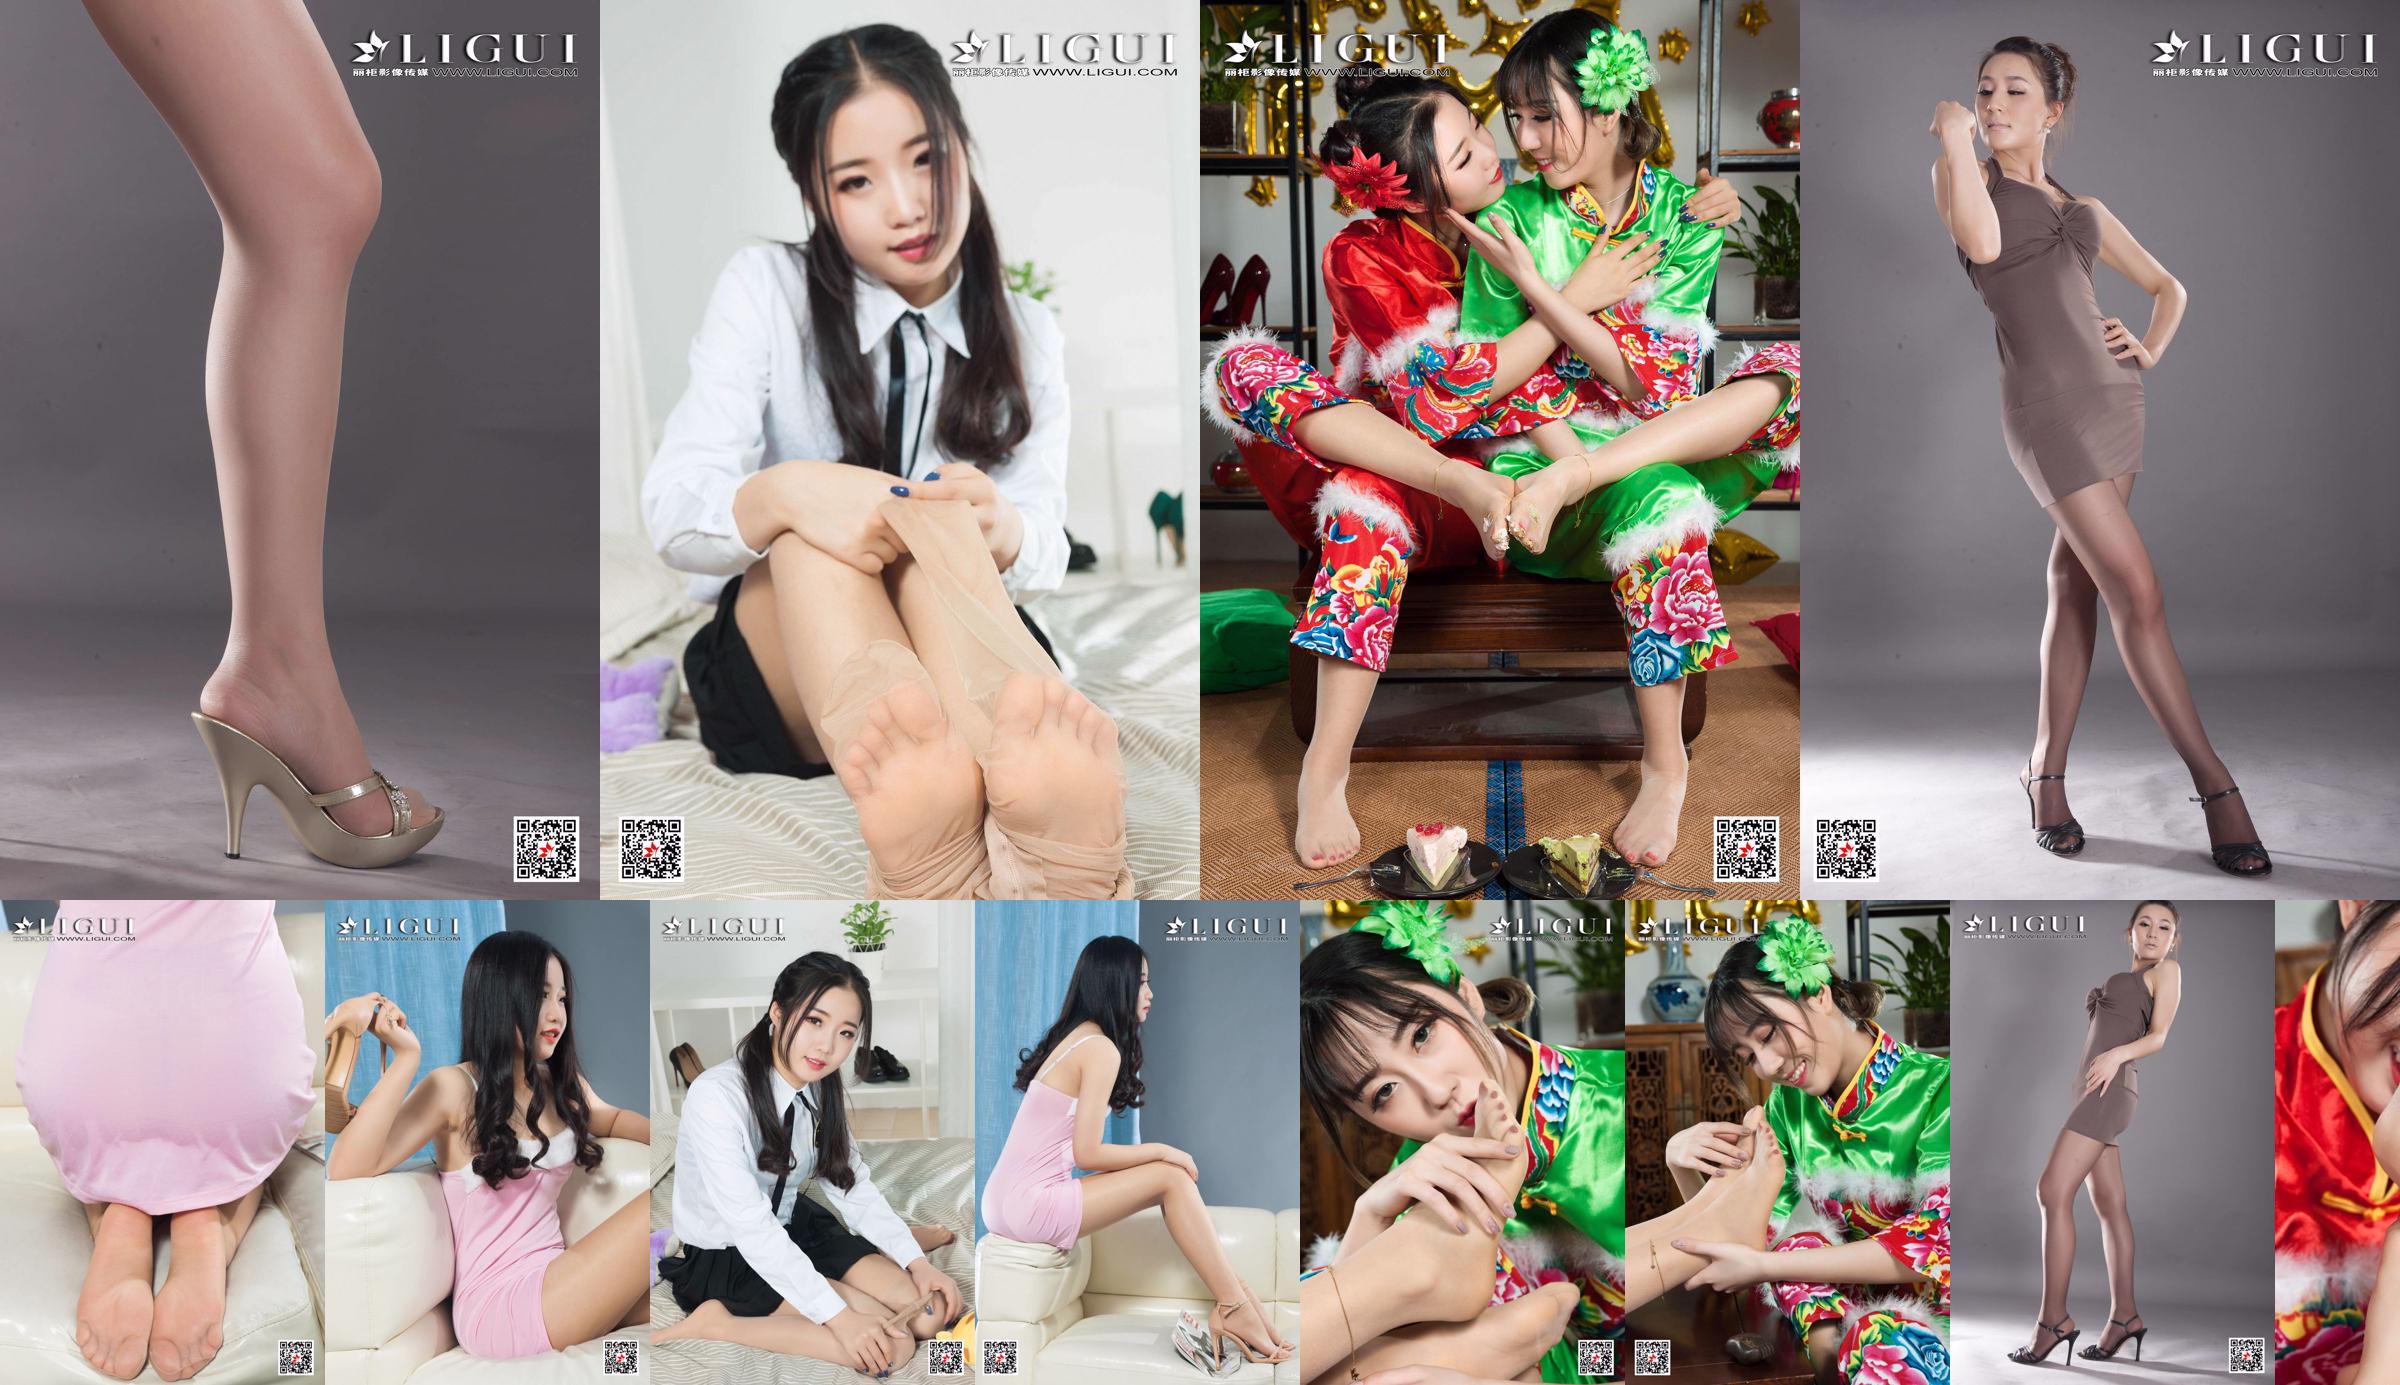 [丽 柜 Ligui] Model Yuanyuan "Studio Shot Beauty" No.a1857d Seite 1